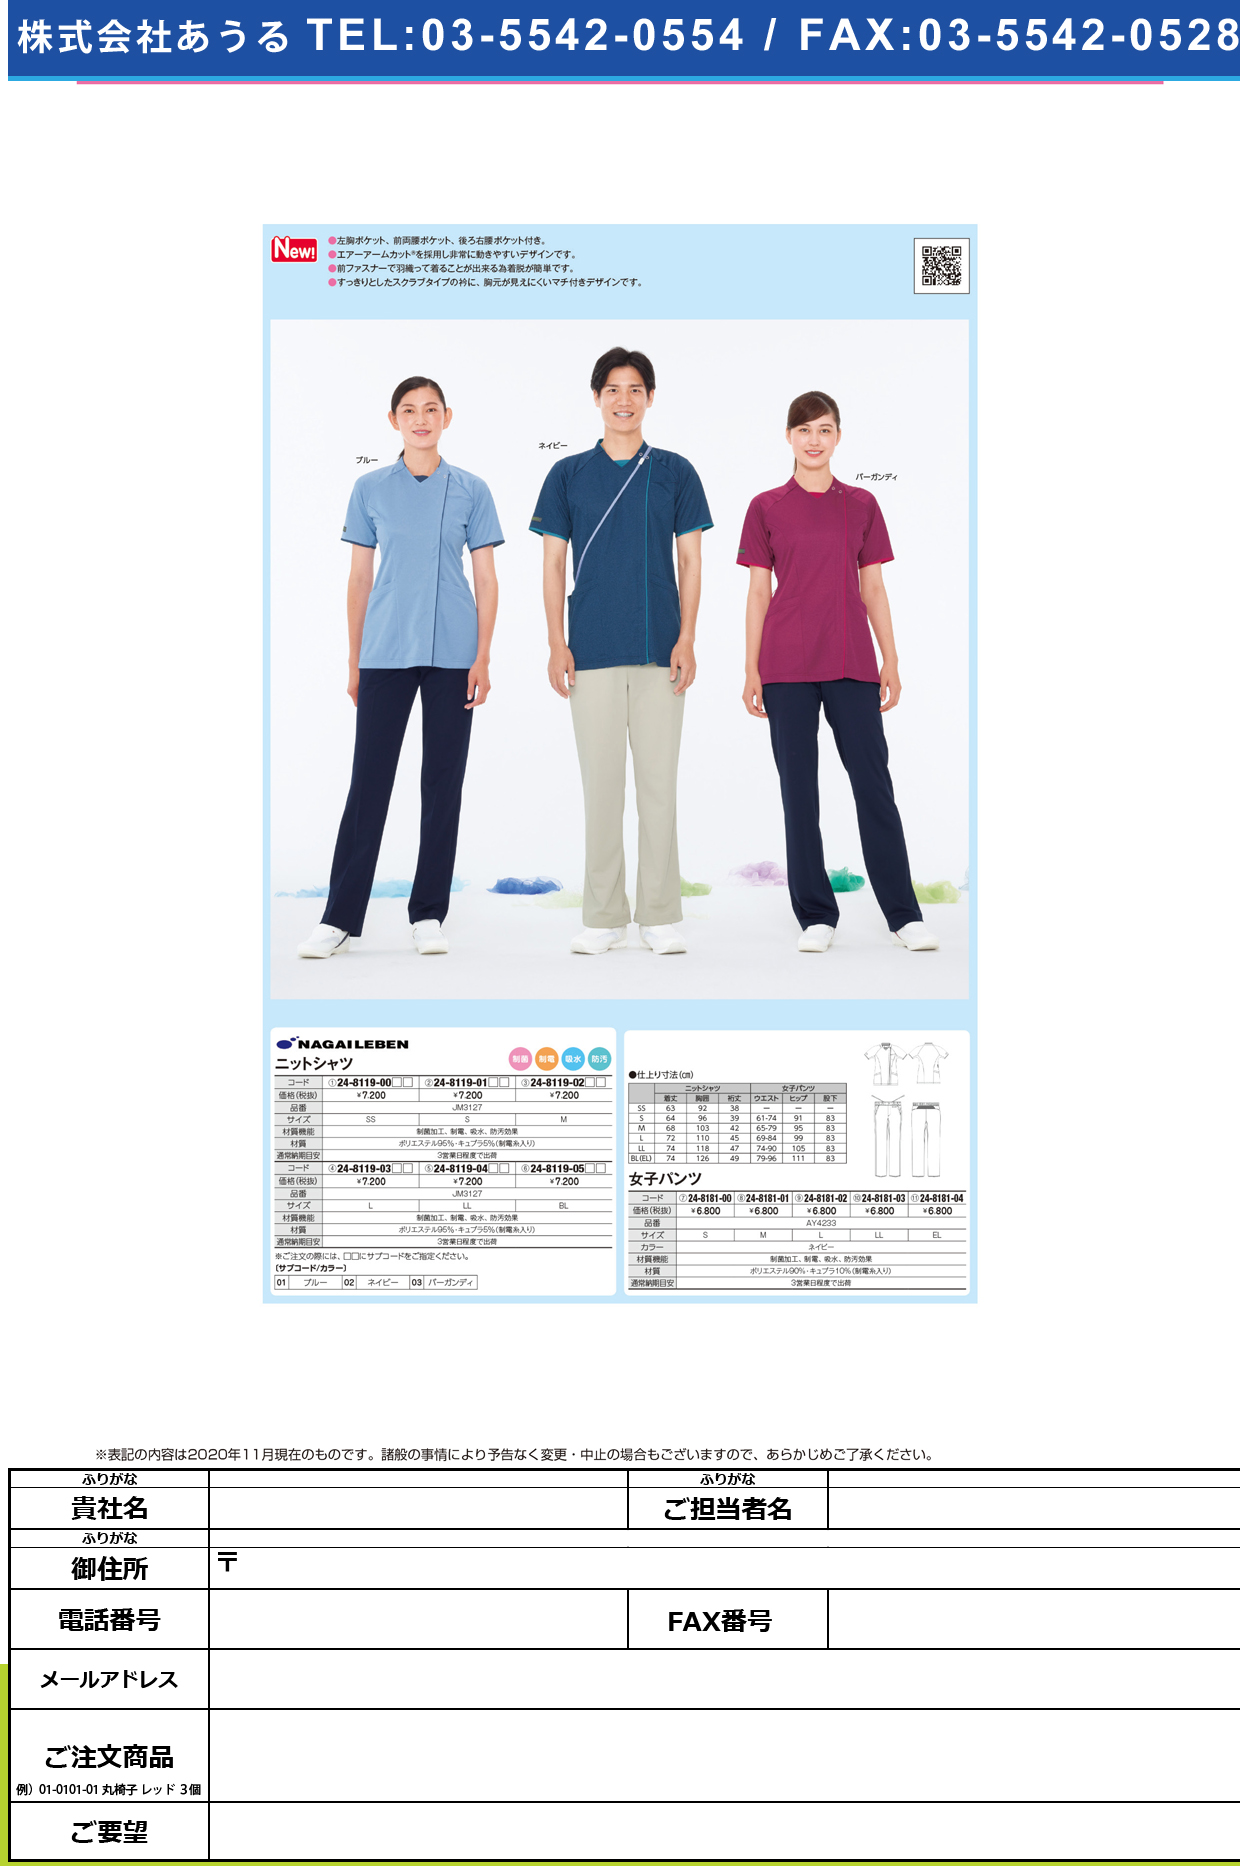 ニットシャツ JM-3127(L)JM-3127(L)ネイビー(24-8119-03-02)【ナガイレーベン】(販売単位:1)